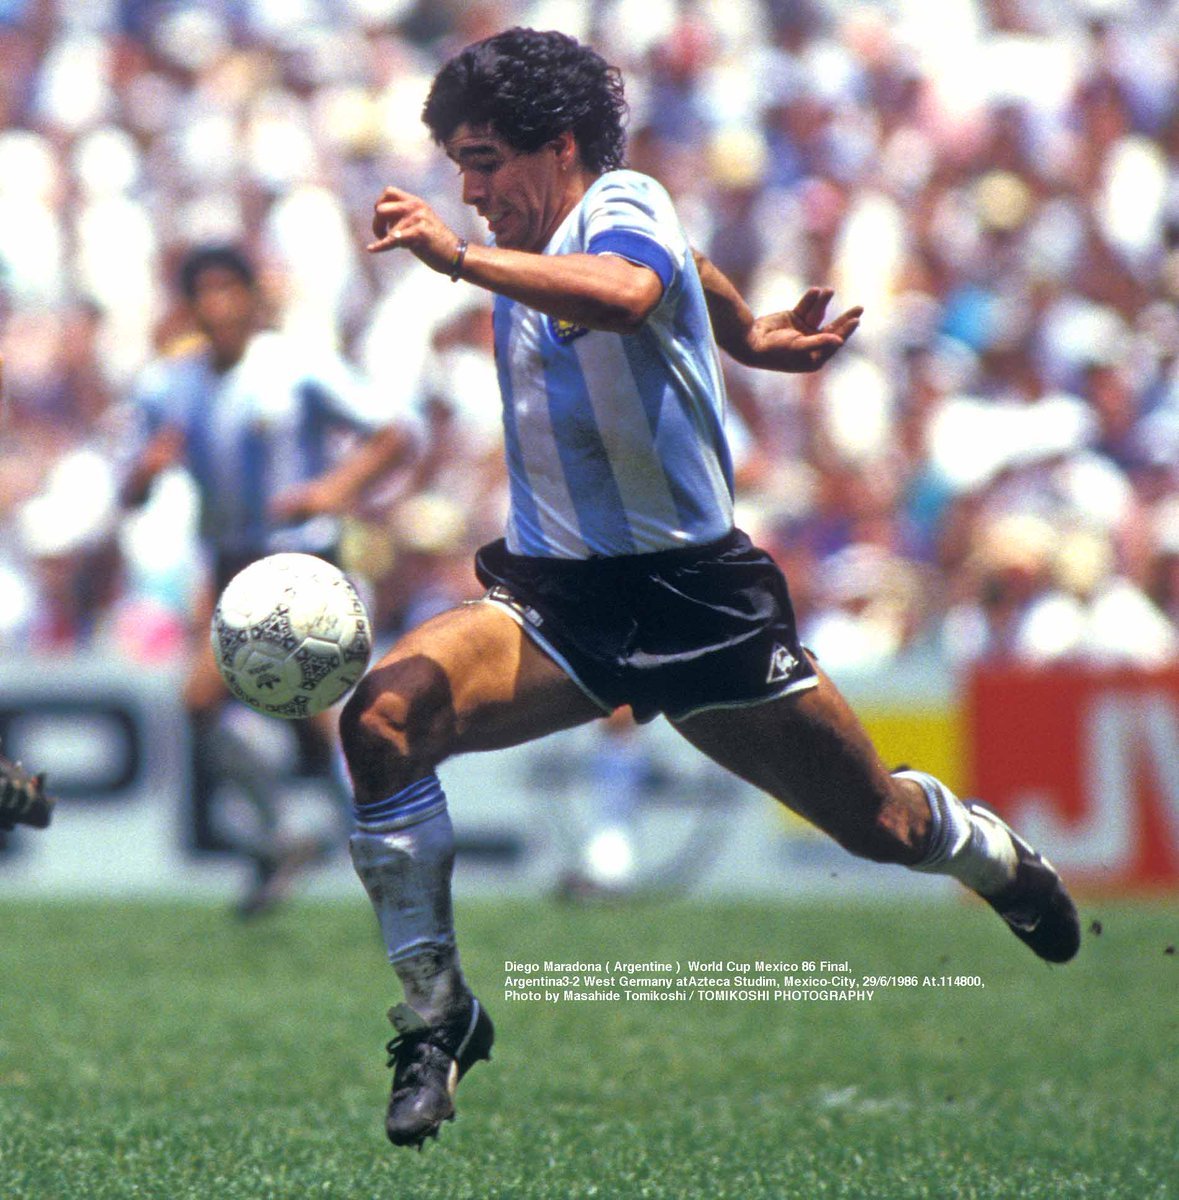 '🌟 El Mundial del '86 fue una montaña rusa de emociones. Maradona dejando huella con la 'Mano de Dios' y el 'Gol del Siglo'. ¡Esa Argentina campeona nos regaló momentos inolvidables! ⚽🏆 #Mundial86 #Maradona #FútbolHistórico'
Maradona es y sera el maximo idolo de la seleccion